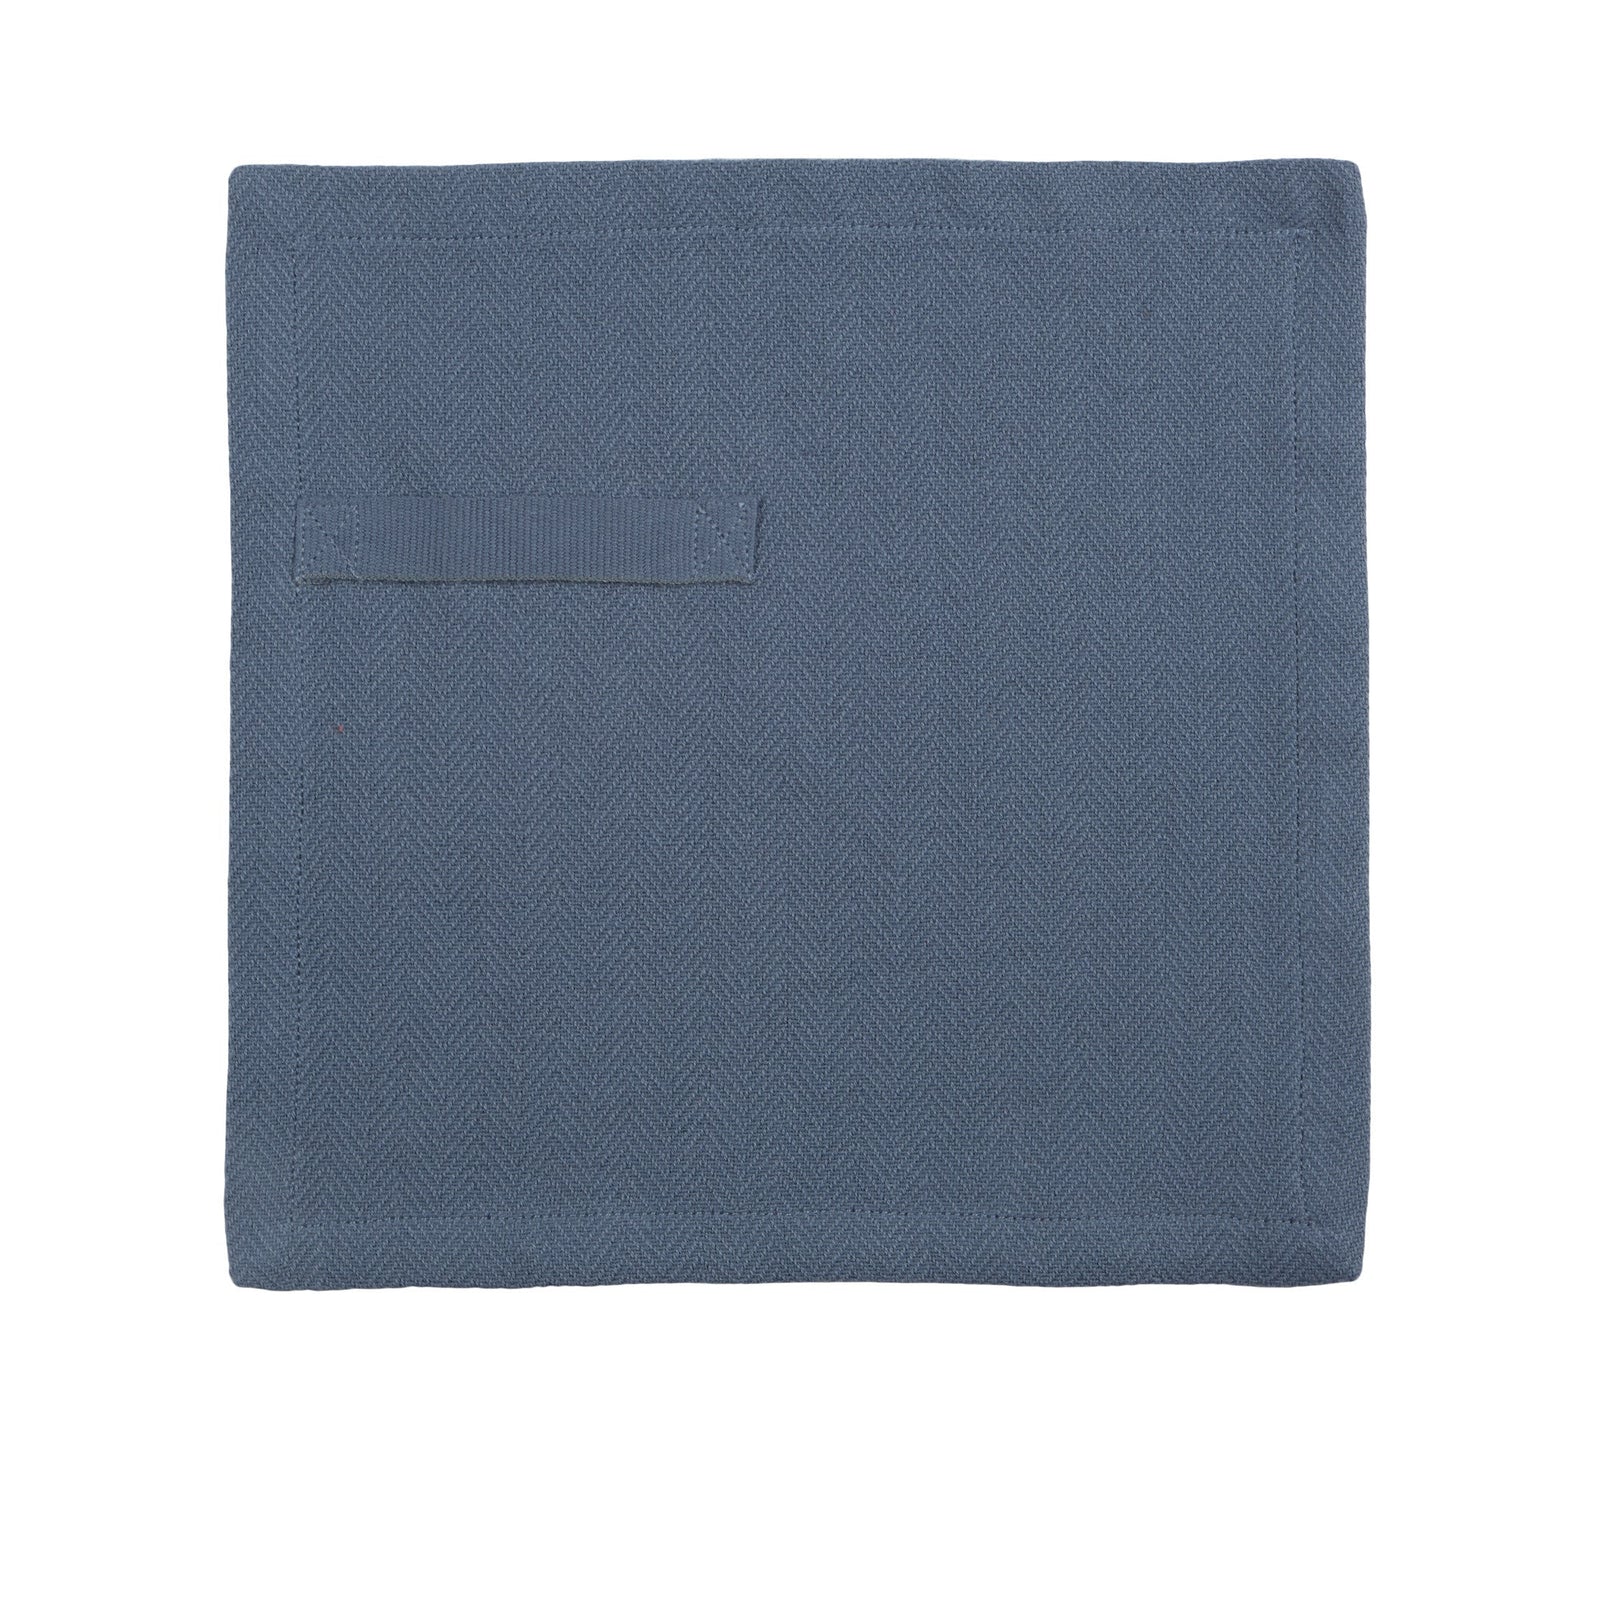 La serviette de tous les jours Company Organic, Bleu gris